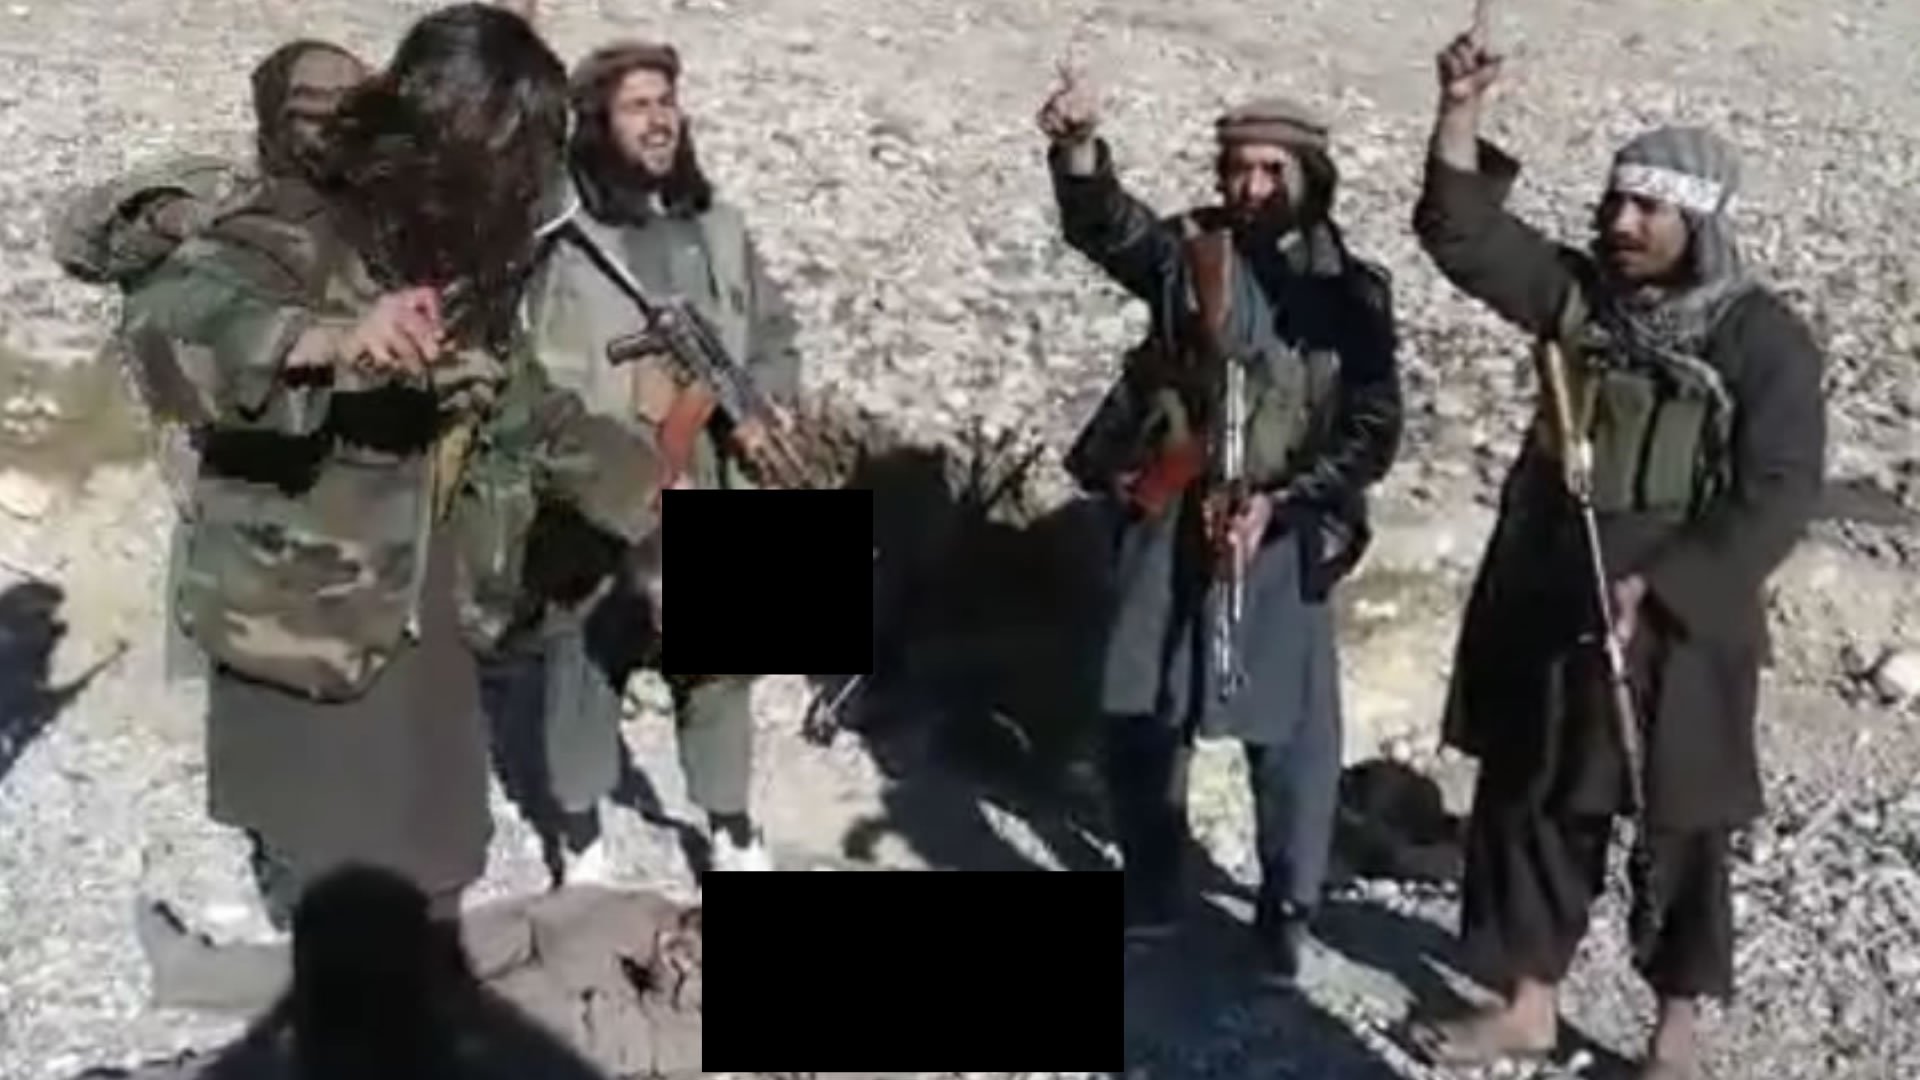 تصاویر هولناک منتشر شده در روزهای اخیر شبه نظامیان طالبان را در حال گردن زدن یک سرباز افغان و خوشحالی پس از آن نشان می دهد.